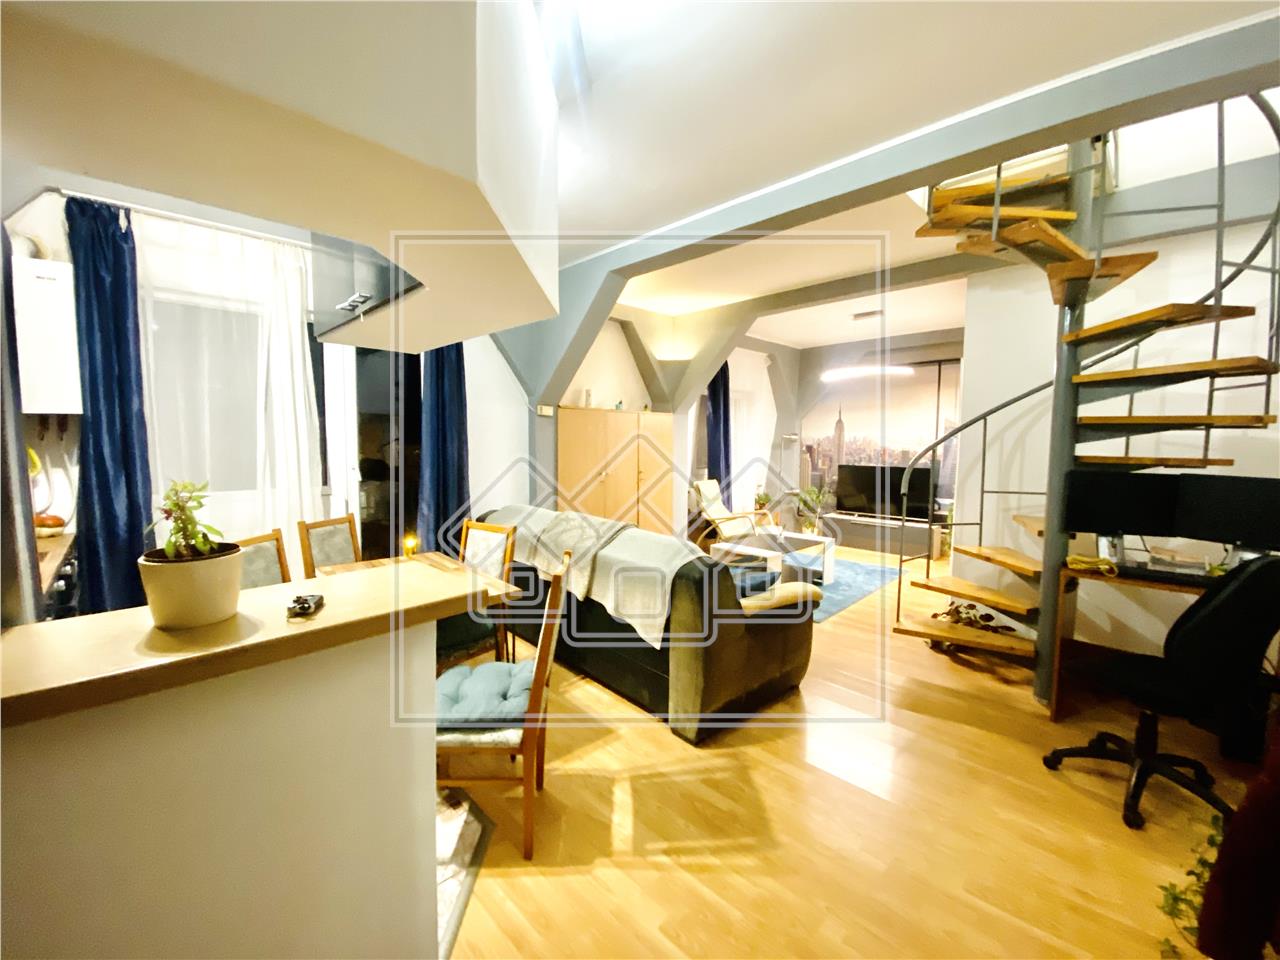 Apartament de vanzare in Sibiu - 3 camere - zona Dioda